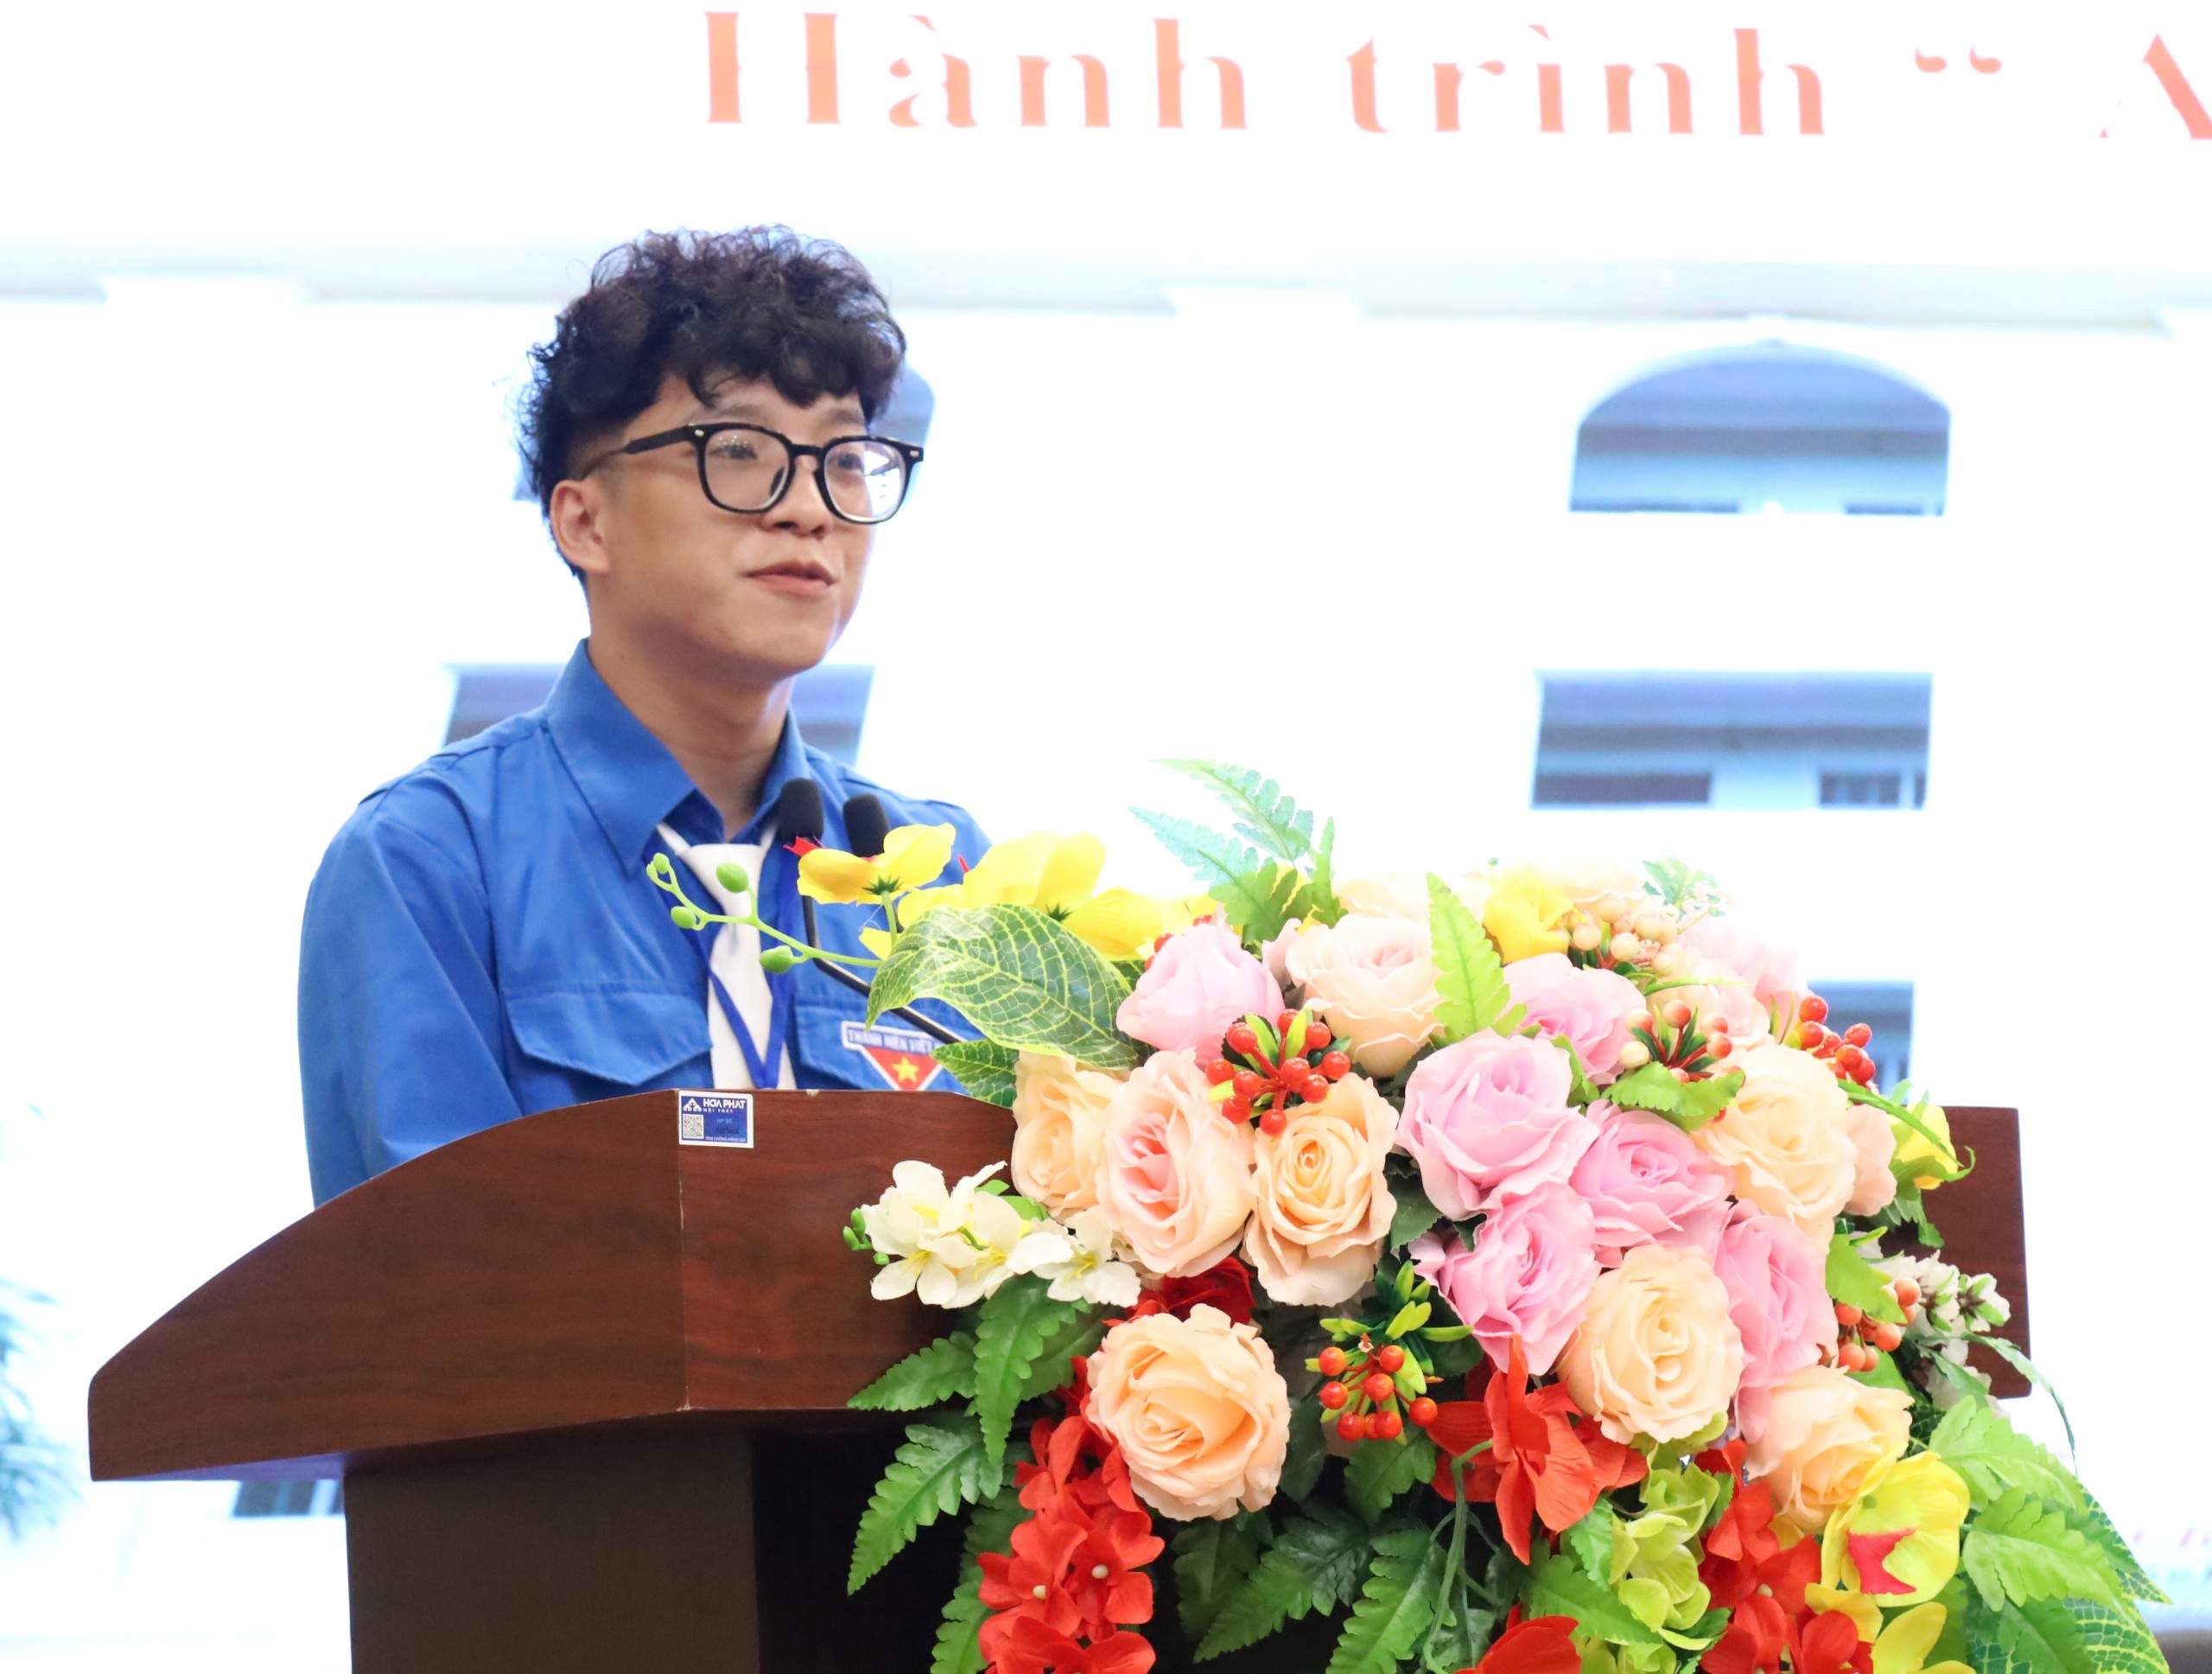 Anh Phạm Vi Khanh - Bí thư Đoàn khoa Kinh tế trình bày tham luận với chủ đề 'Hành trình ấm áp từ trái tim'.